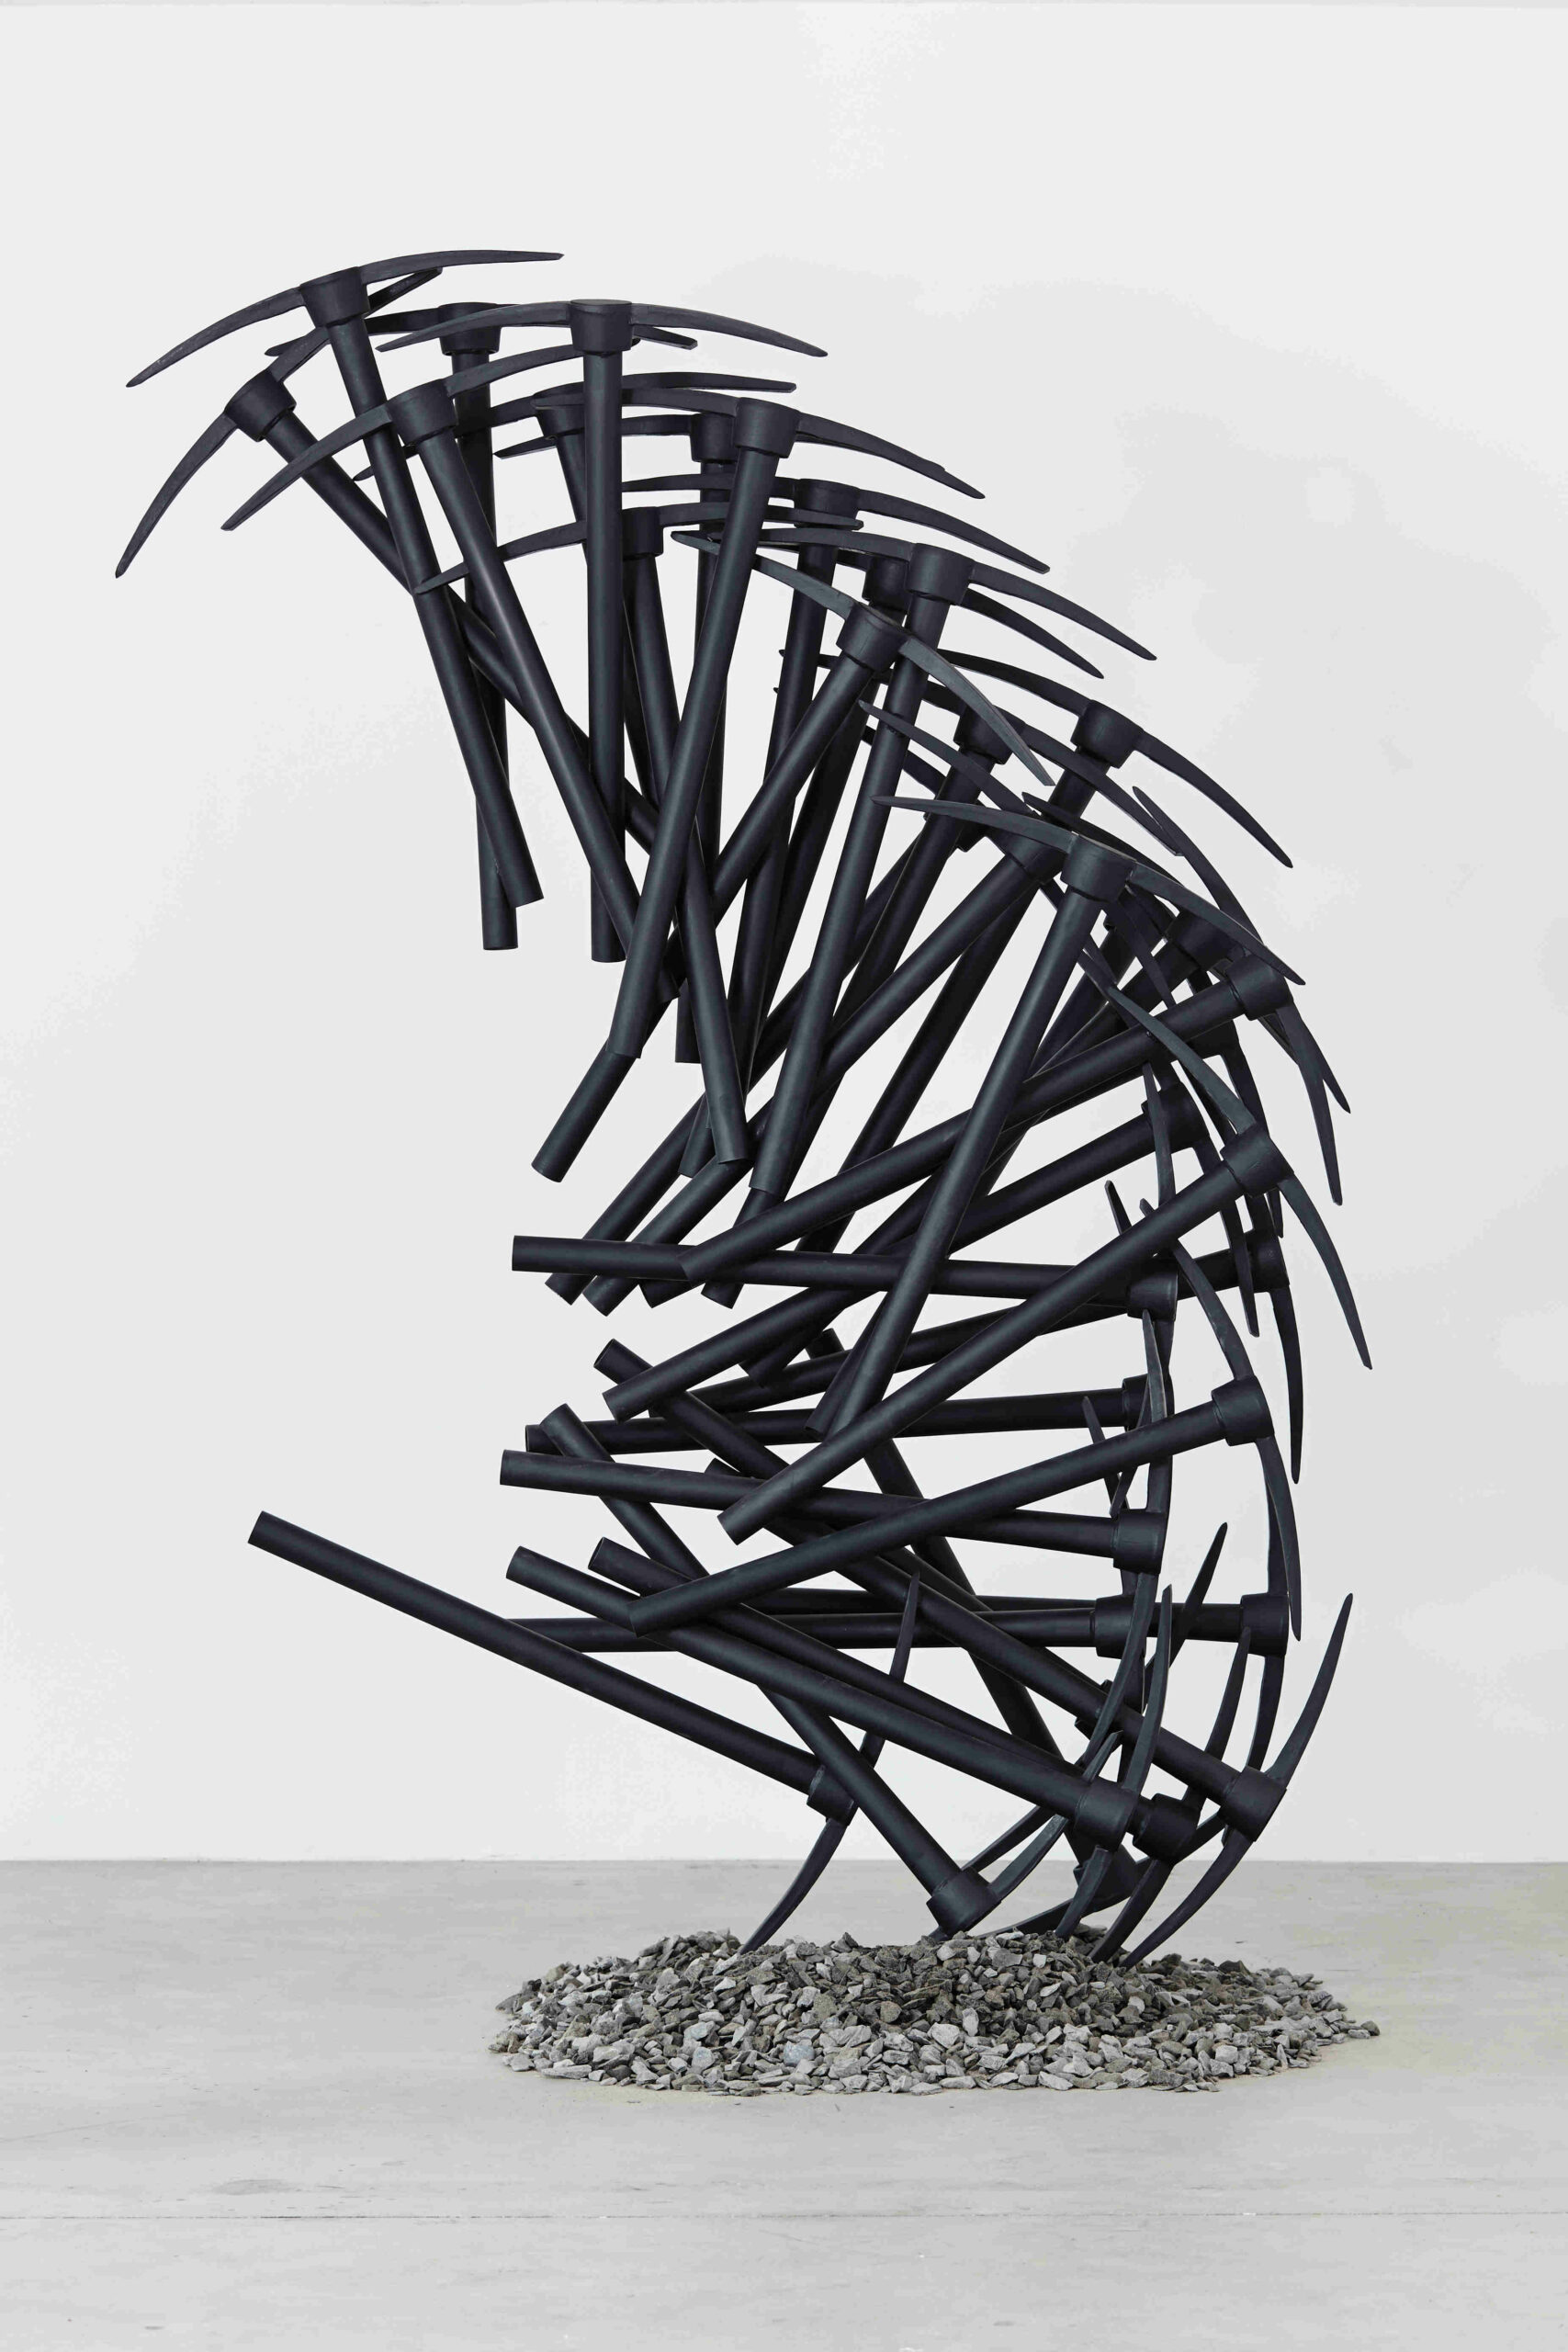 Michele Mathison, Breaking Ground, 2014, sculpture